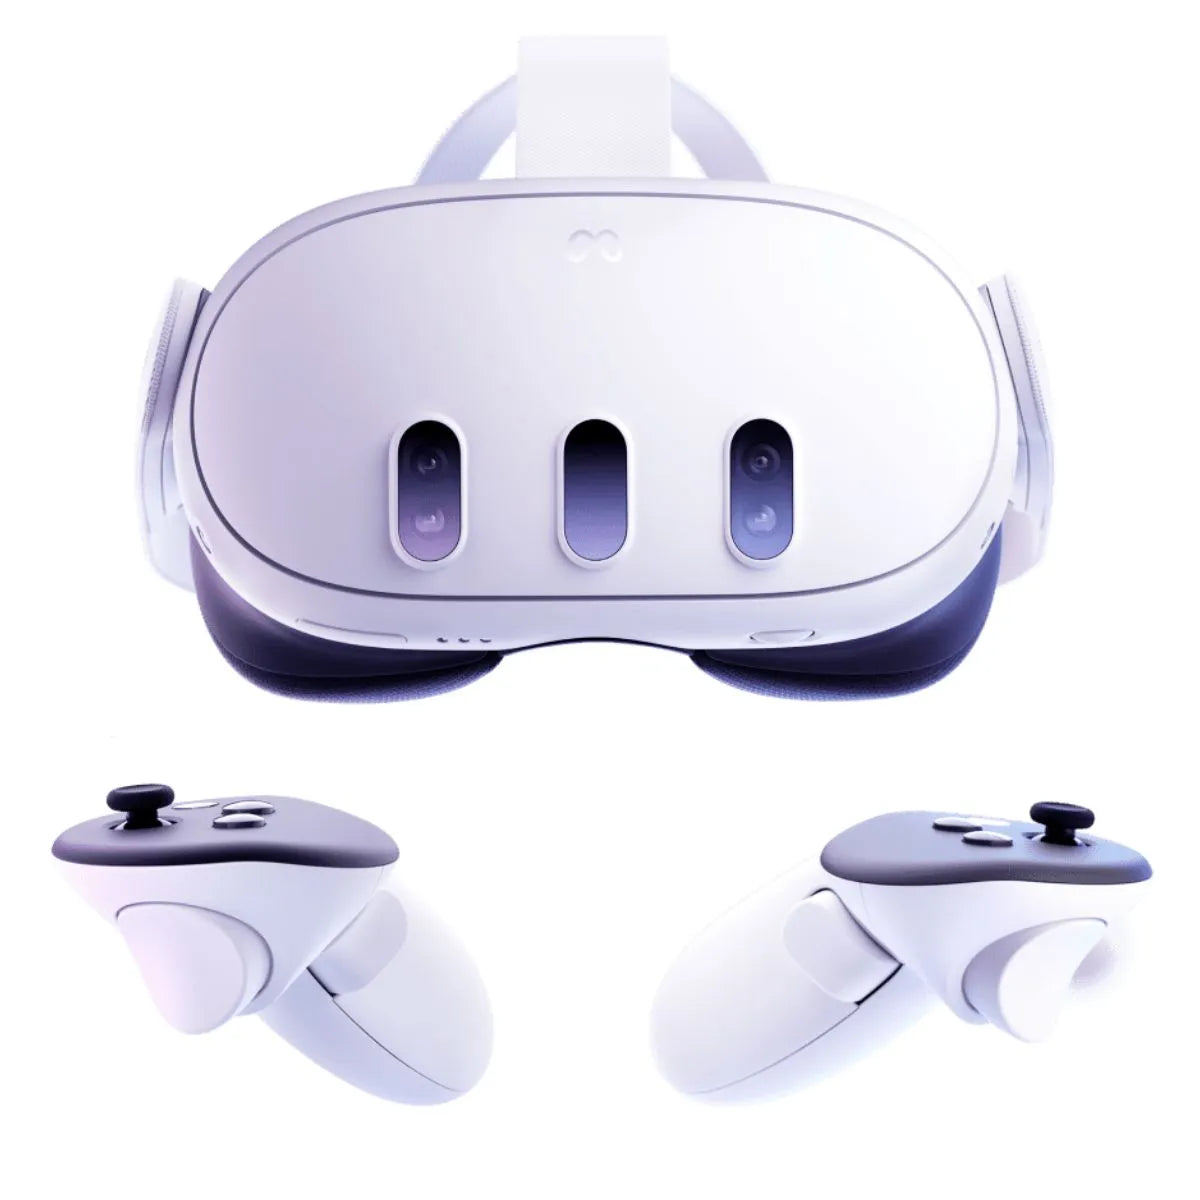 Meta presenta 'quest 3 VR', su nuevo headset de realidad mixta